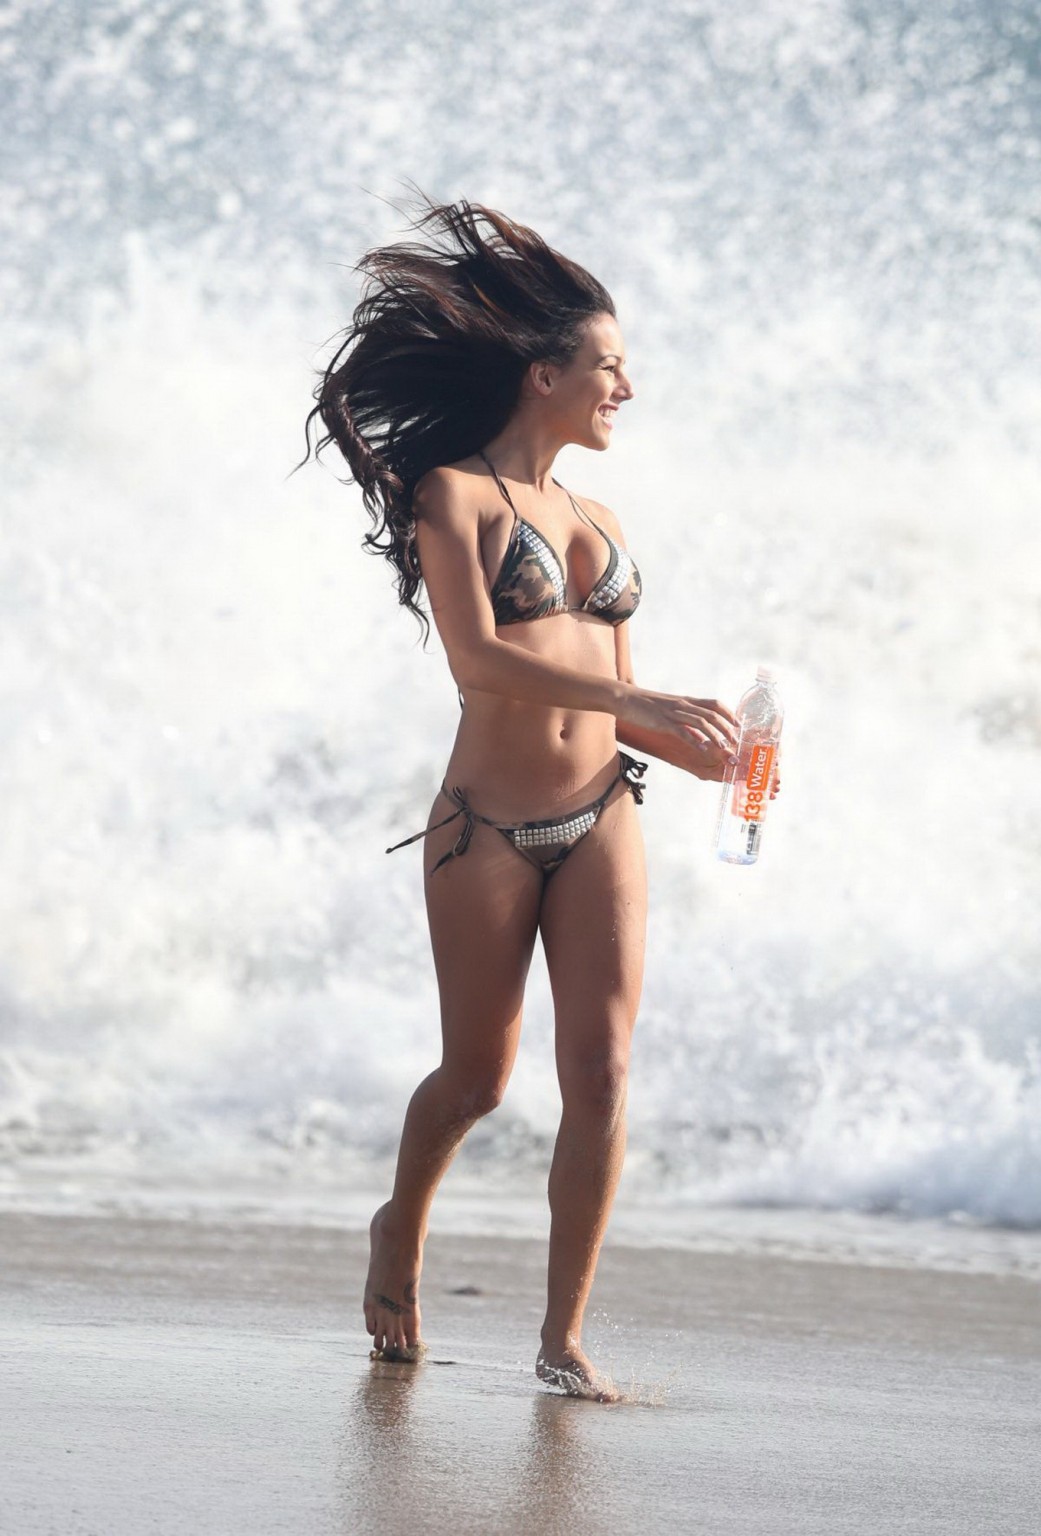 Katelynn ansari zeigt ihren heißen Bikini-Körper für 138 Wasser-Fotoshooting in cali
 #75202824